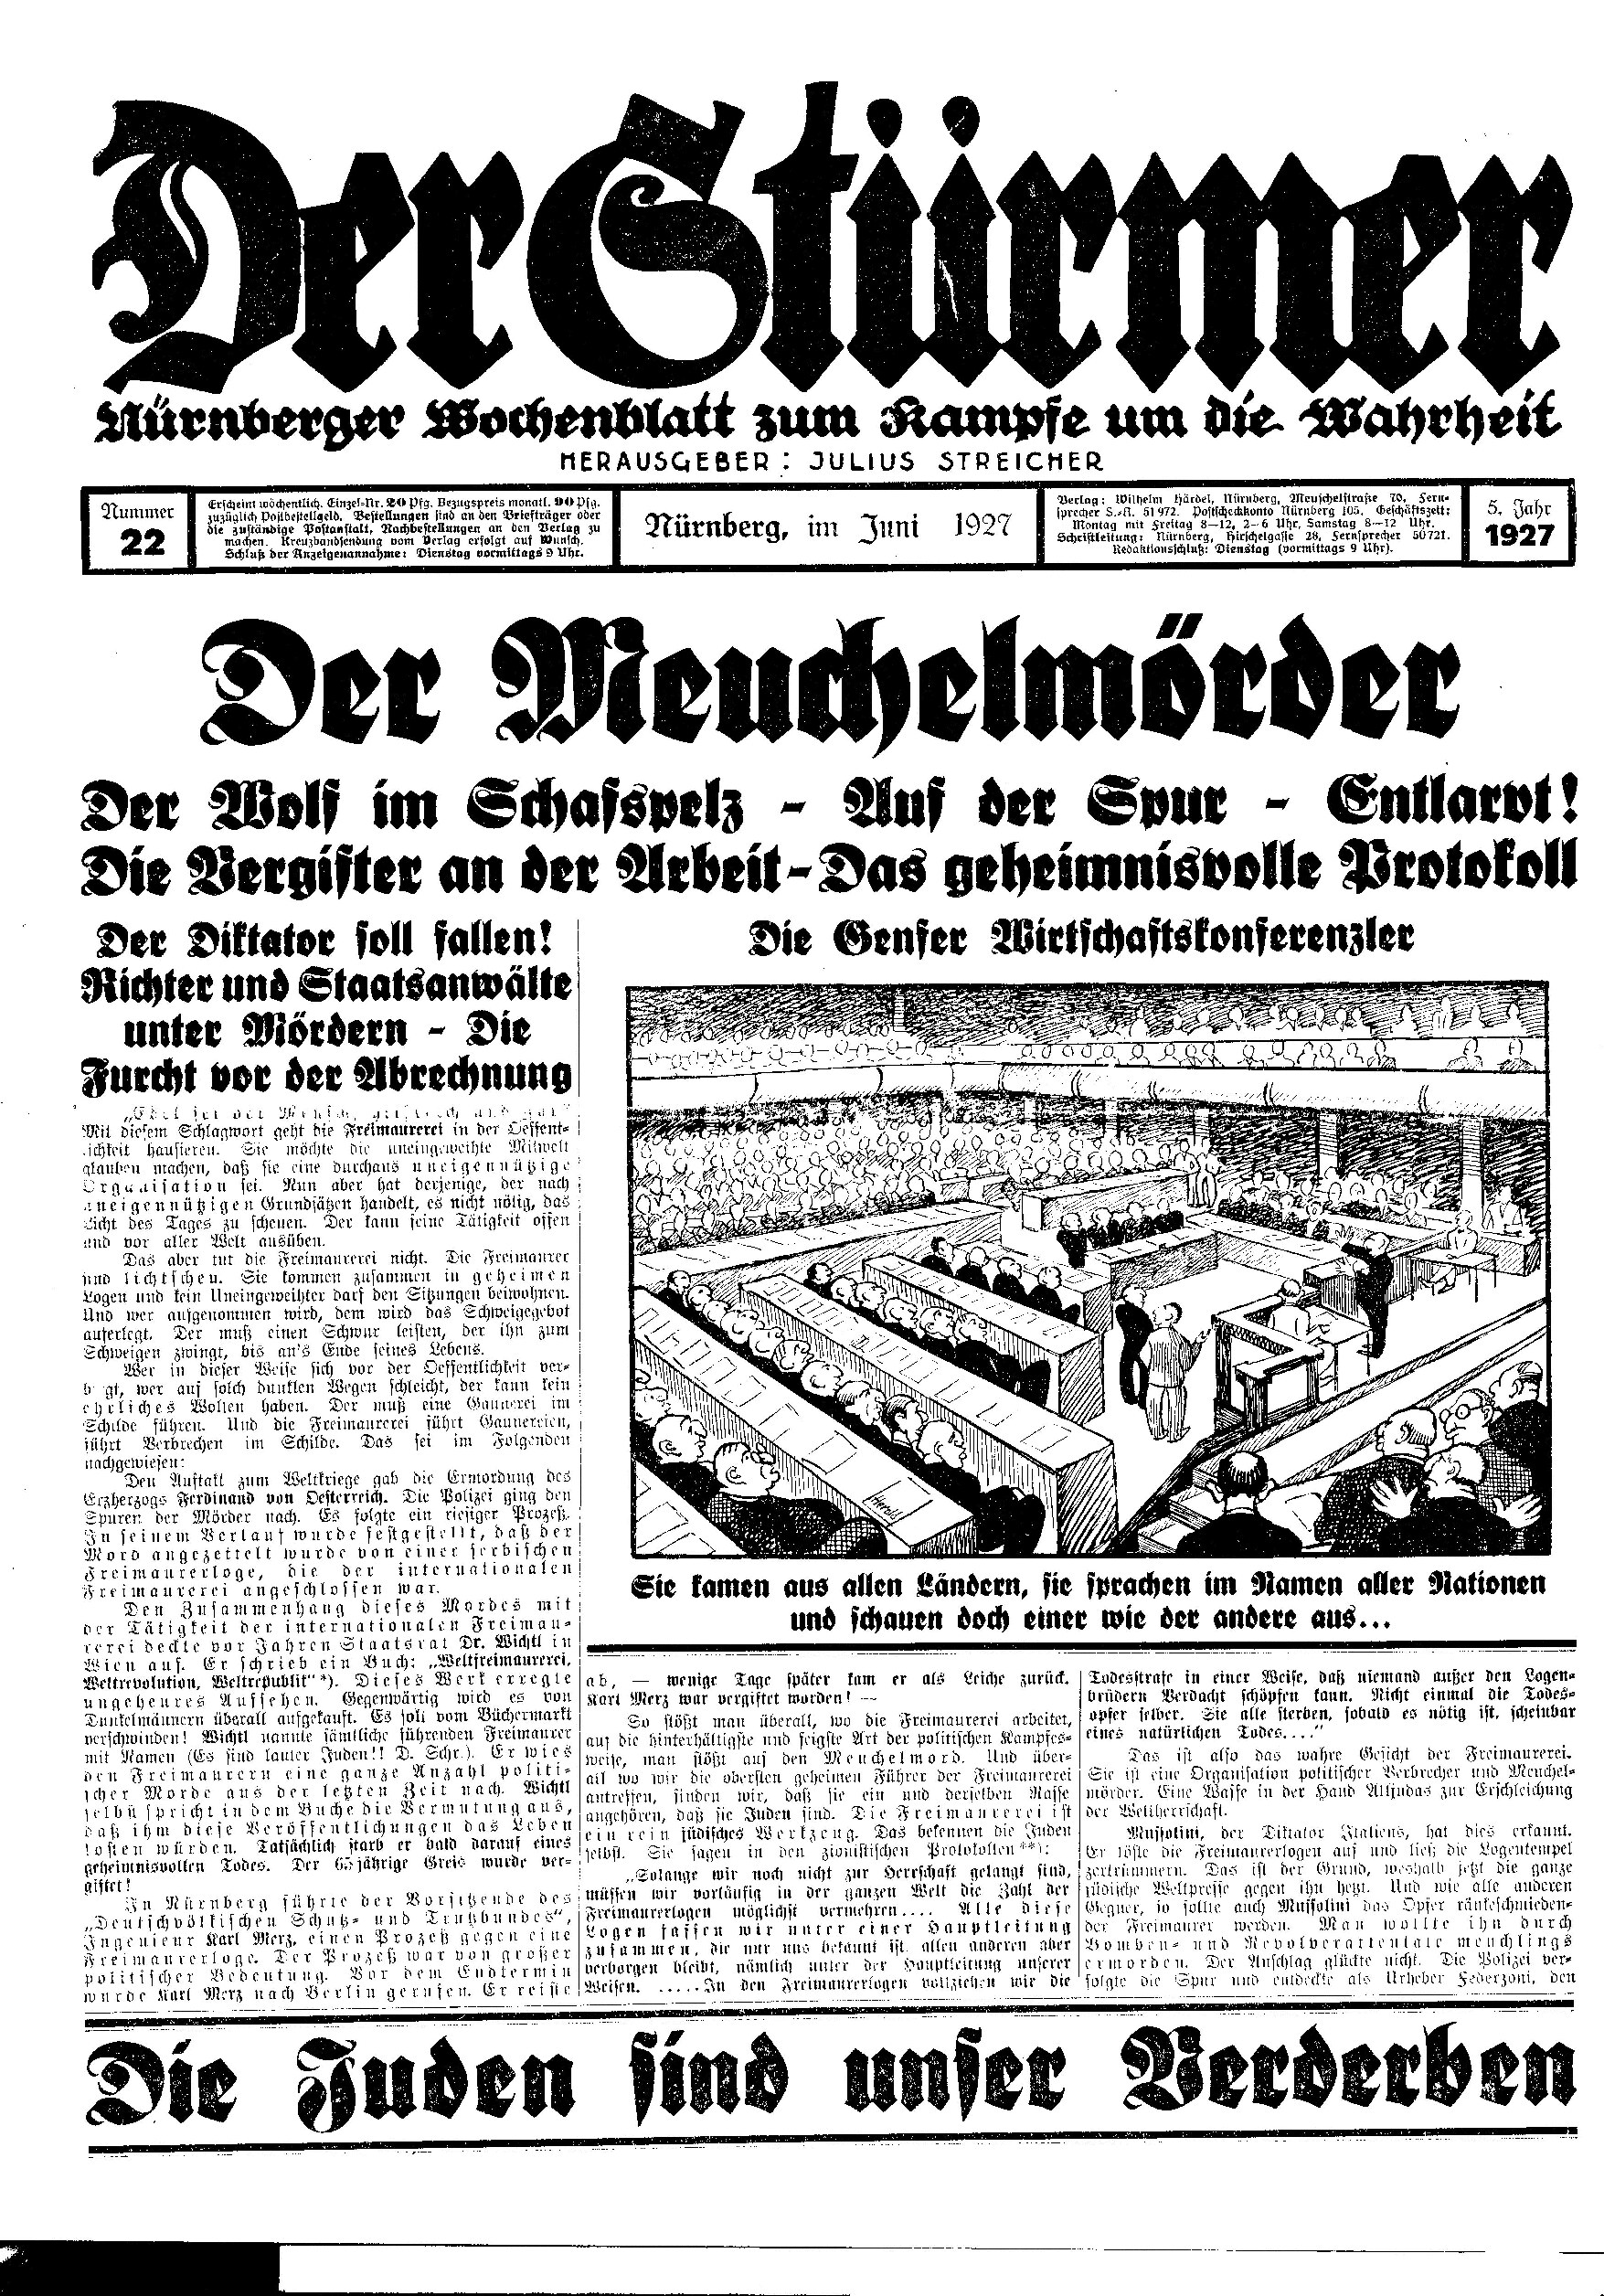 Der Stürmer - 1927 Nr. 22 (6 S., Scan, Fraktur)